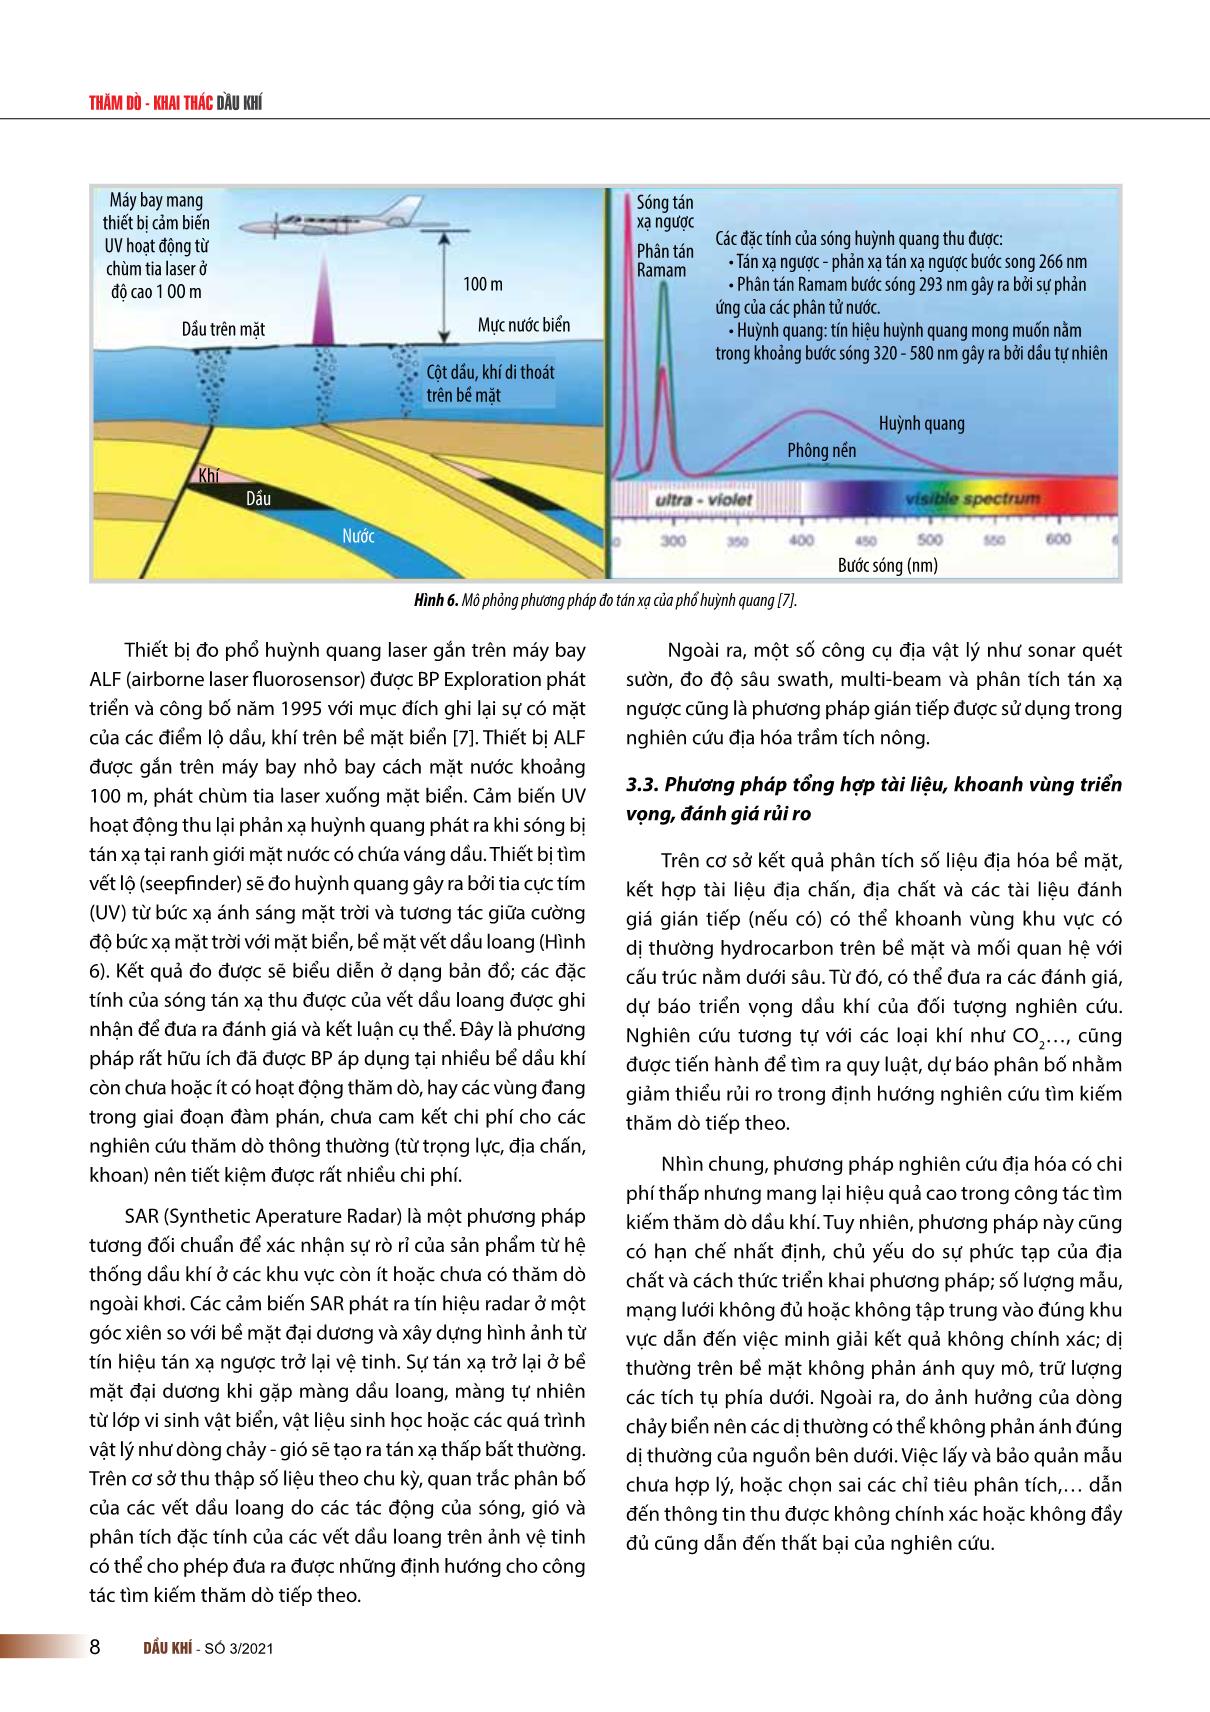 Ứng dụng nghiên cứu địa hóa trầm tích nông trong tìm kiếm thăm dò dầu khí trên biển và thềm lục địa Việt Nam trang 5